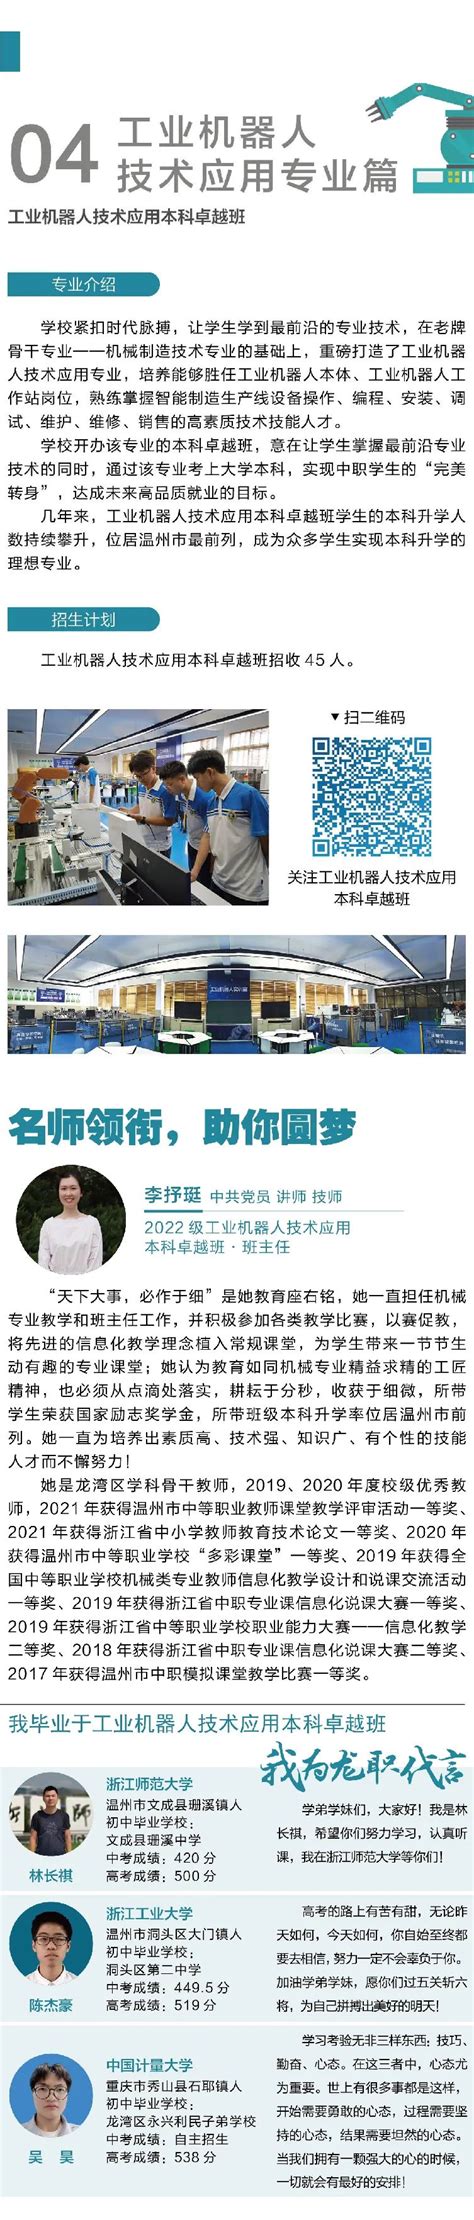 温州市龙湾区职业技术学校2022年招生简章 - 中职技校网